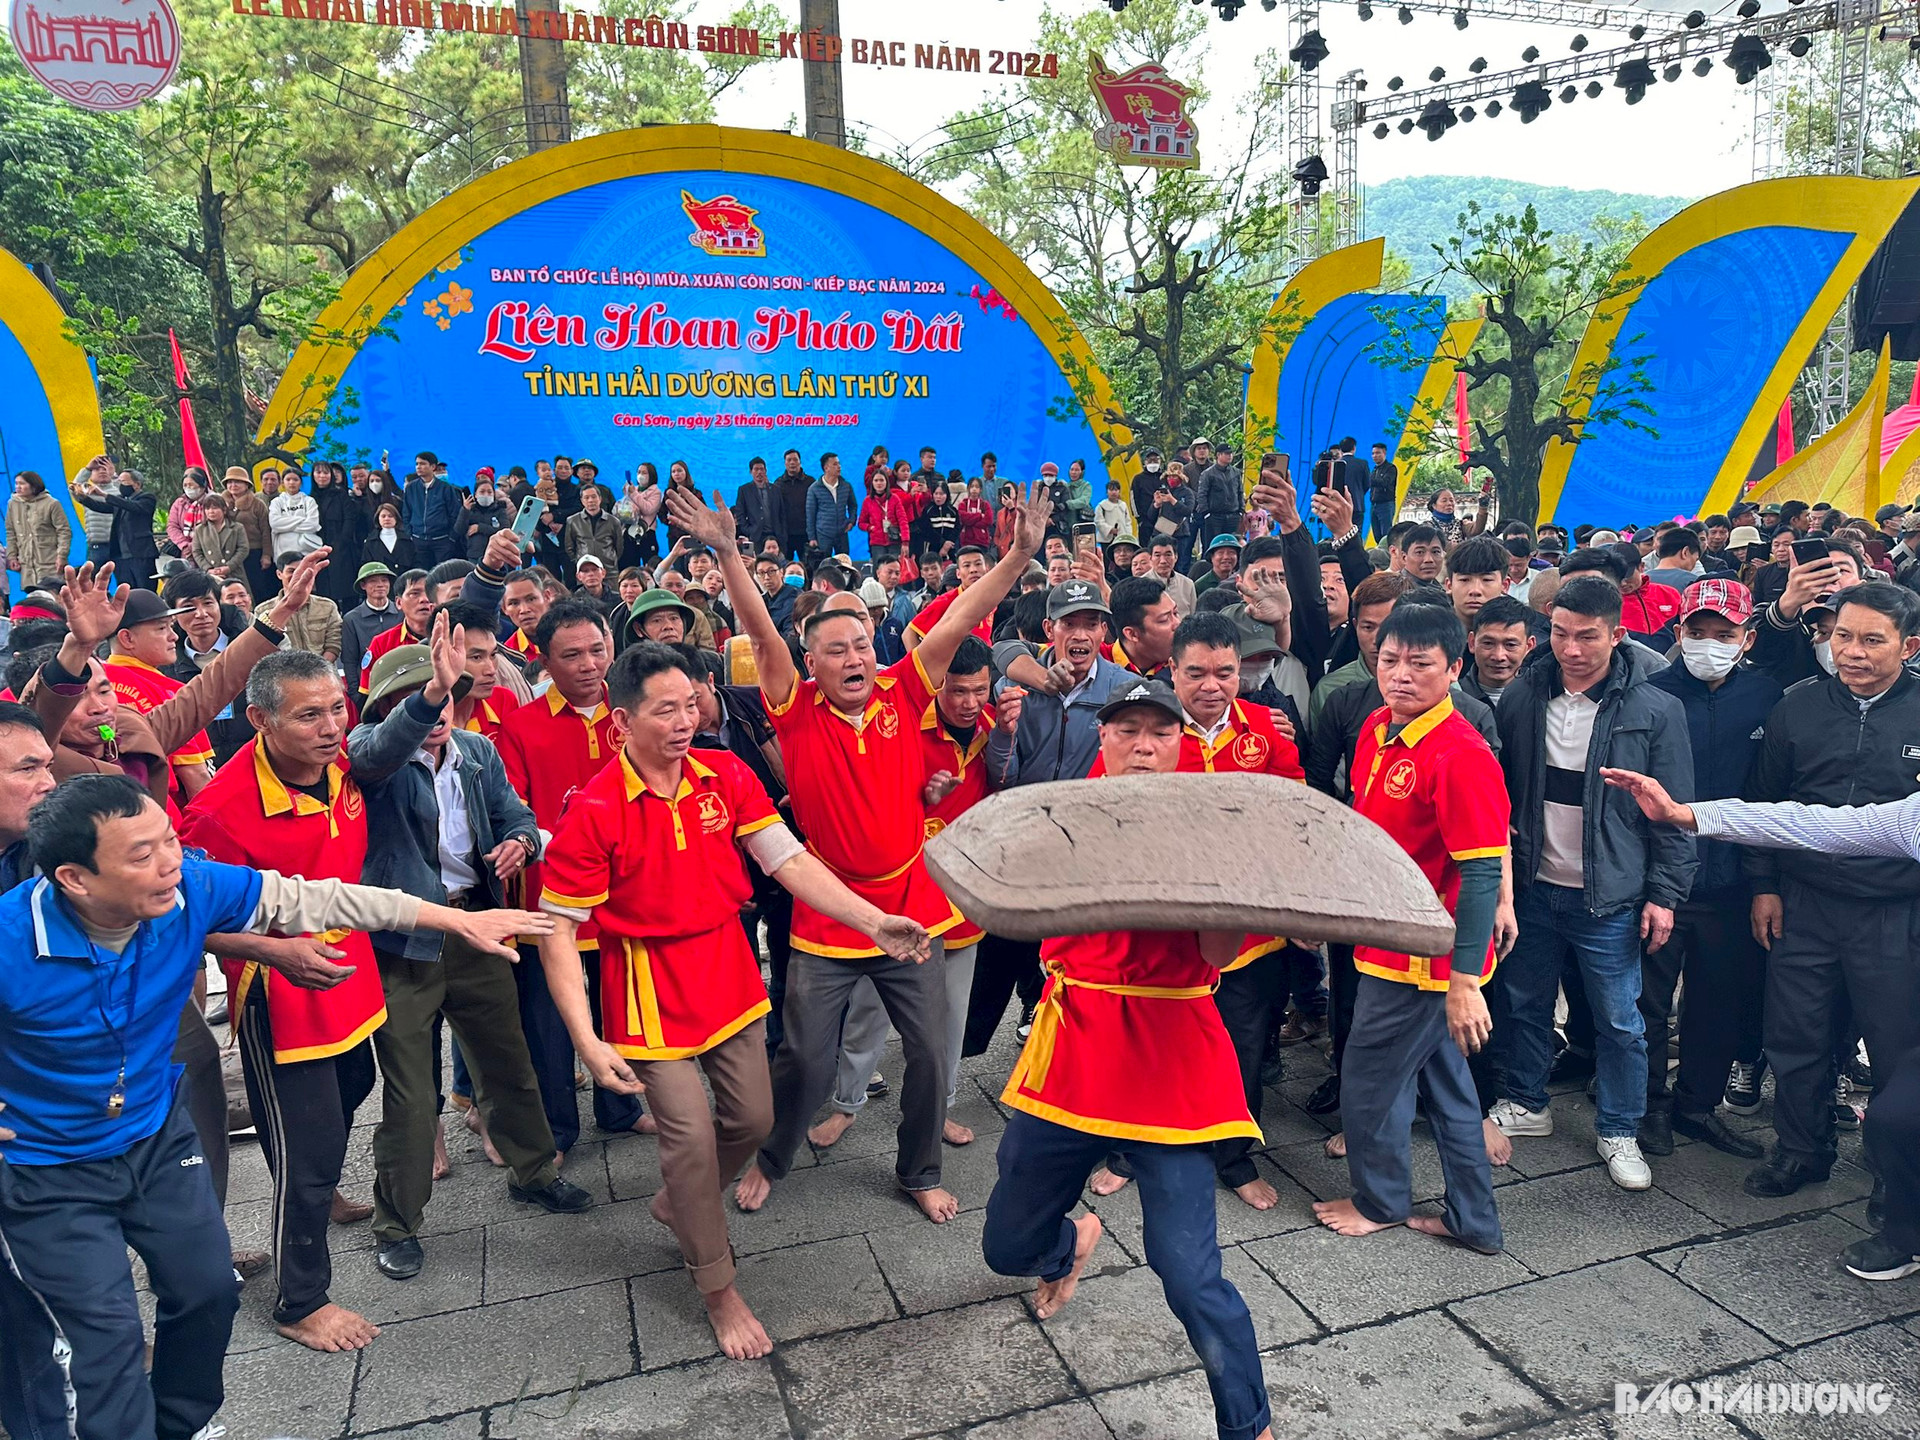 Đội Pháo đất OCOP Nghĩa An (Ninh Giang) tham gia Liên hoan pháo đất tỉnh Hải Dương lần thứ XI (ảnh do cơ sở cung cấp)